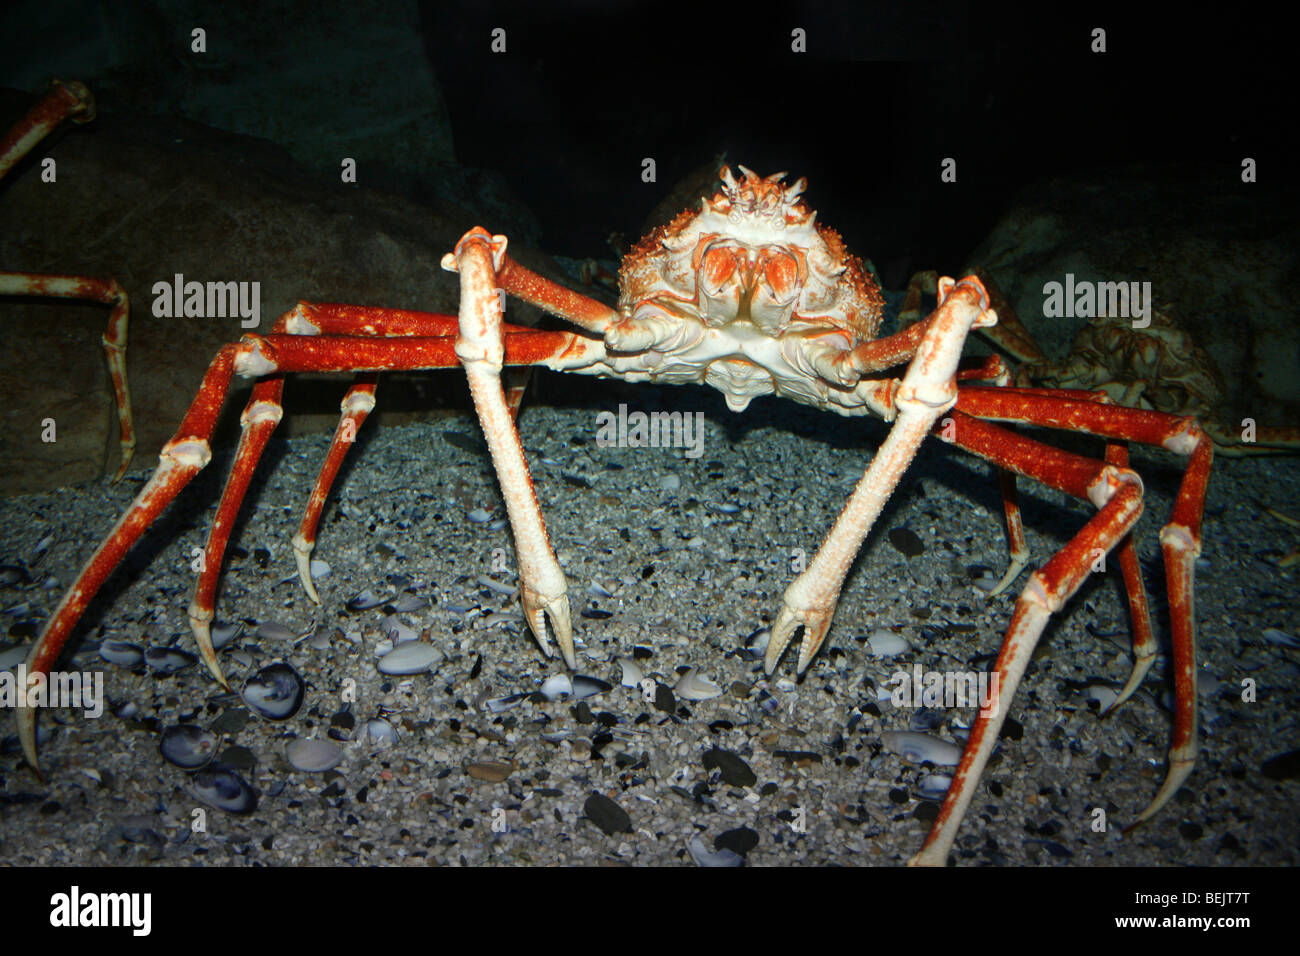 Macrocheira kaempferi crabe araignée japonais prises sur Two Oceans Aquarium, Cape Town, Afrique du Sud Banque D'Images